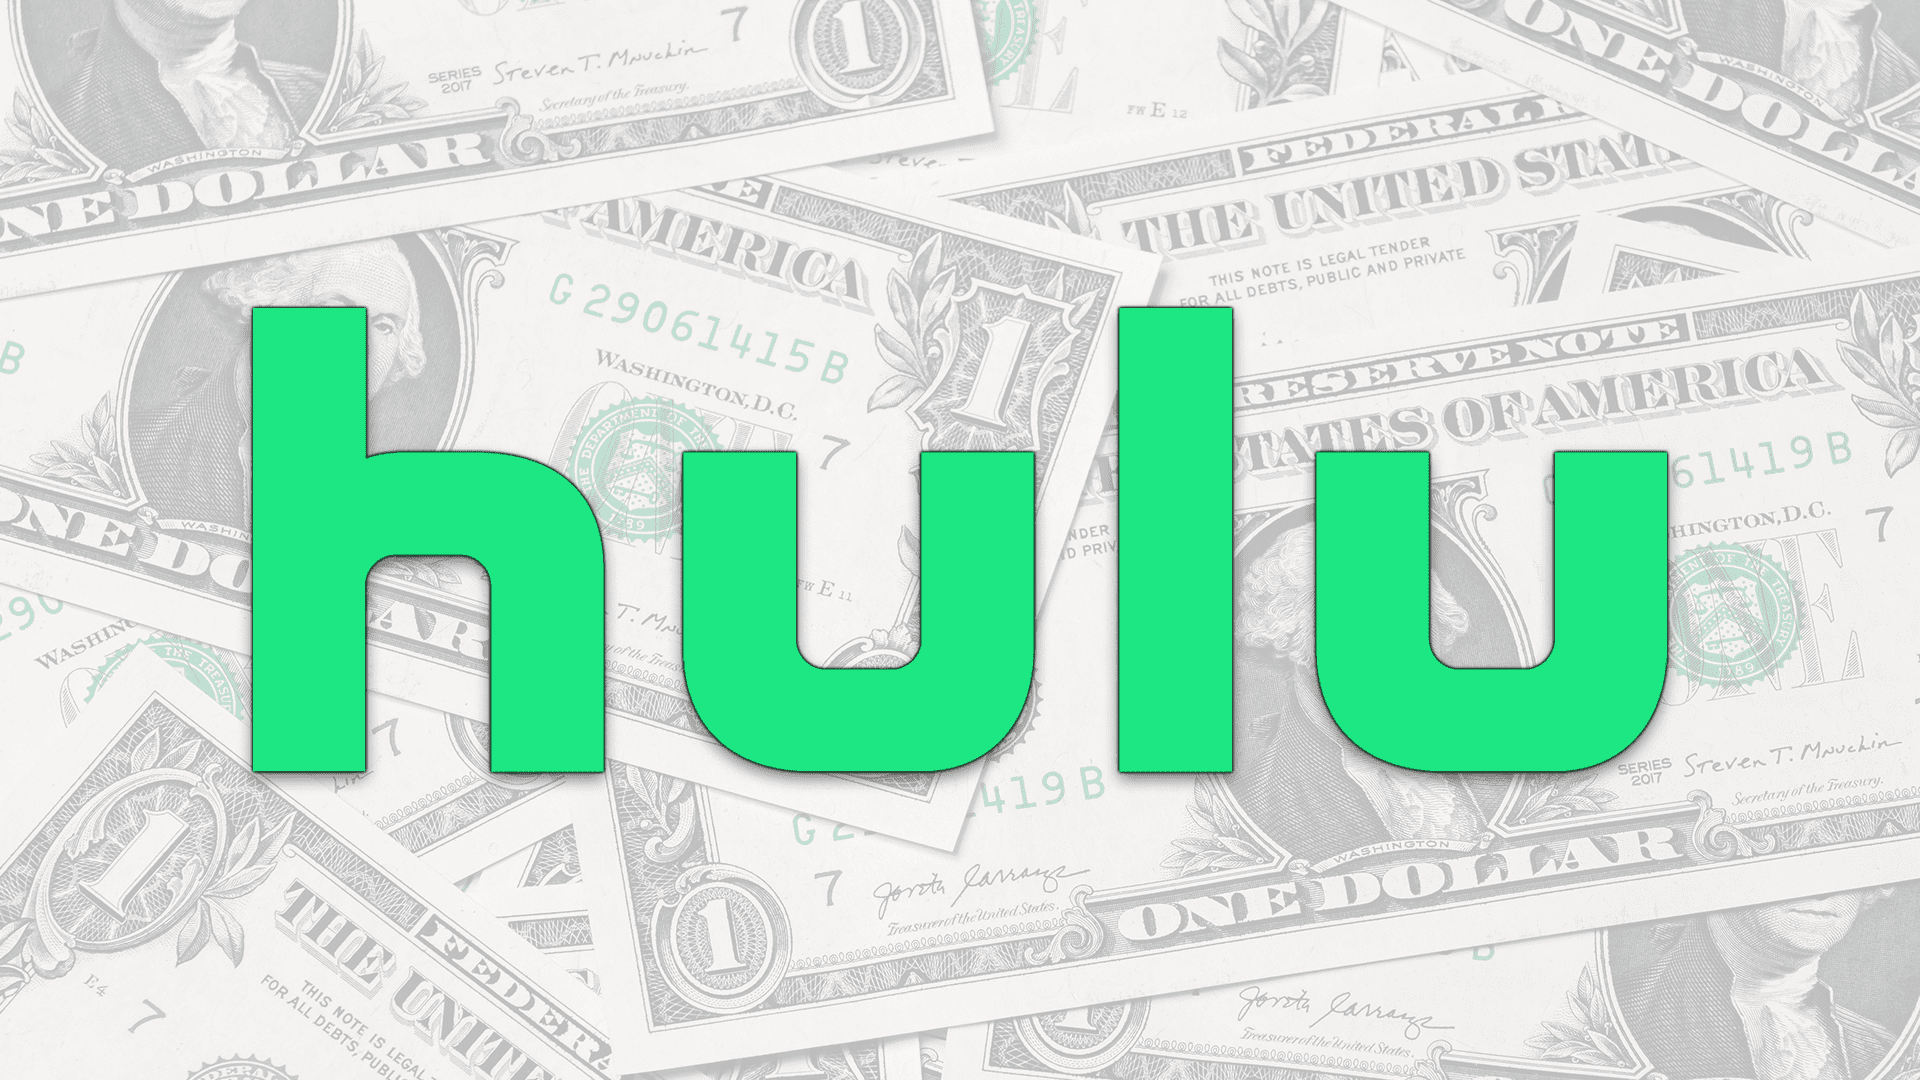 Hulu med Live TV-kunder kommer att få Disney+ och ESPN+ “gratis” efter prishöjning